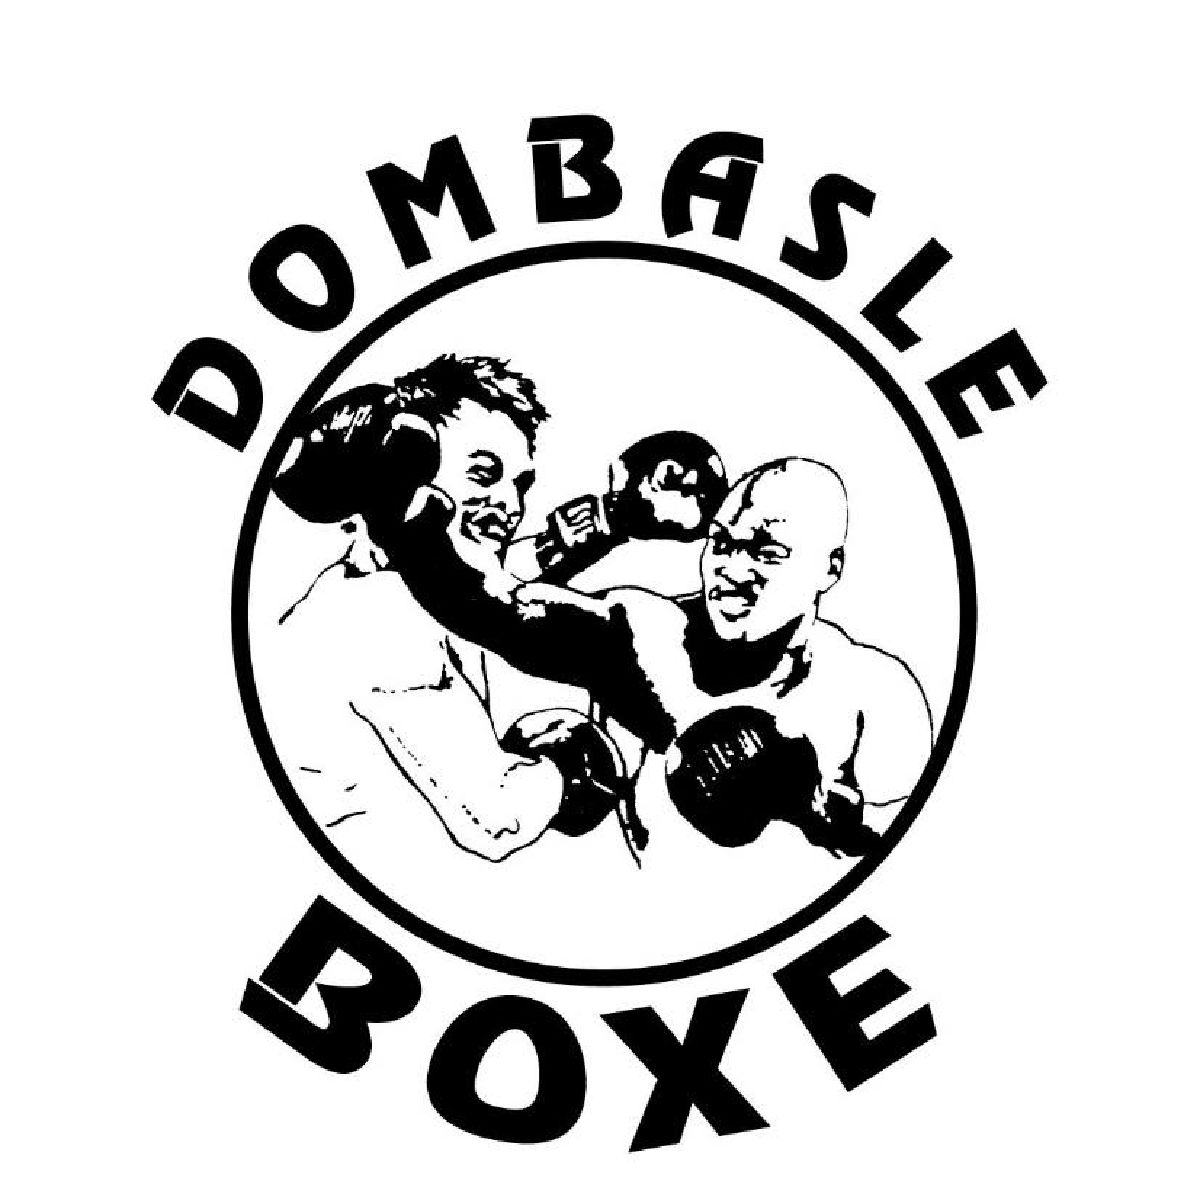 17.02.24 Gala zu Dombasle - Support fir eis Boxeren! YNFA